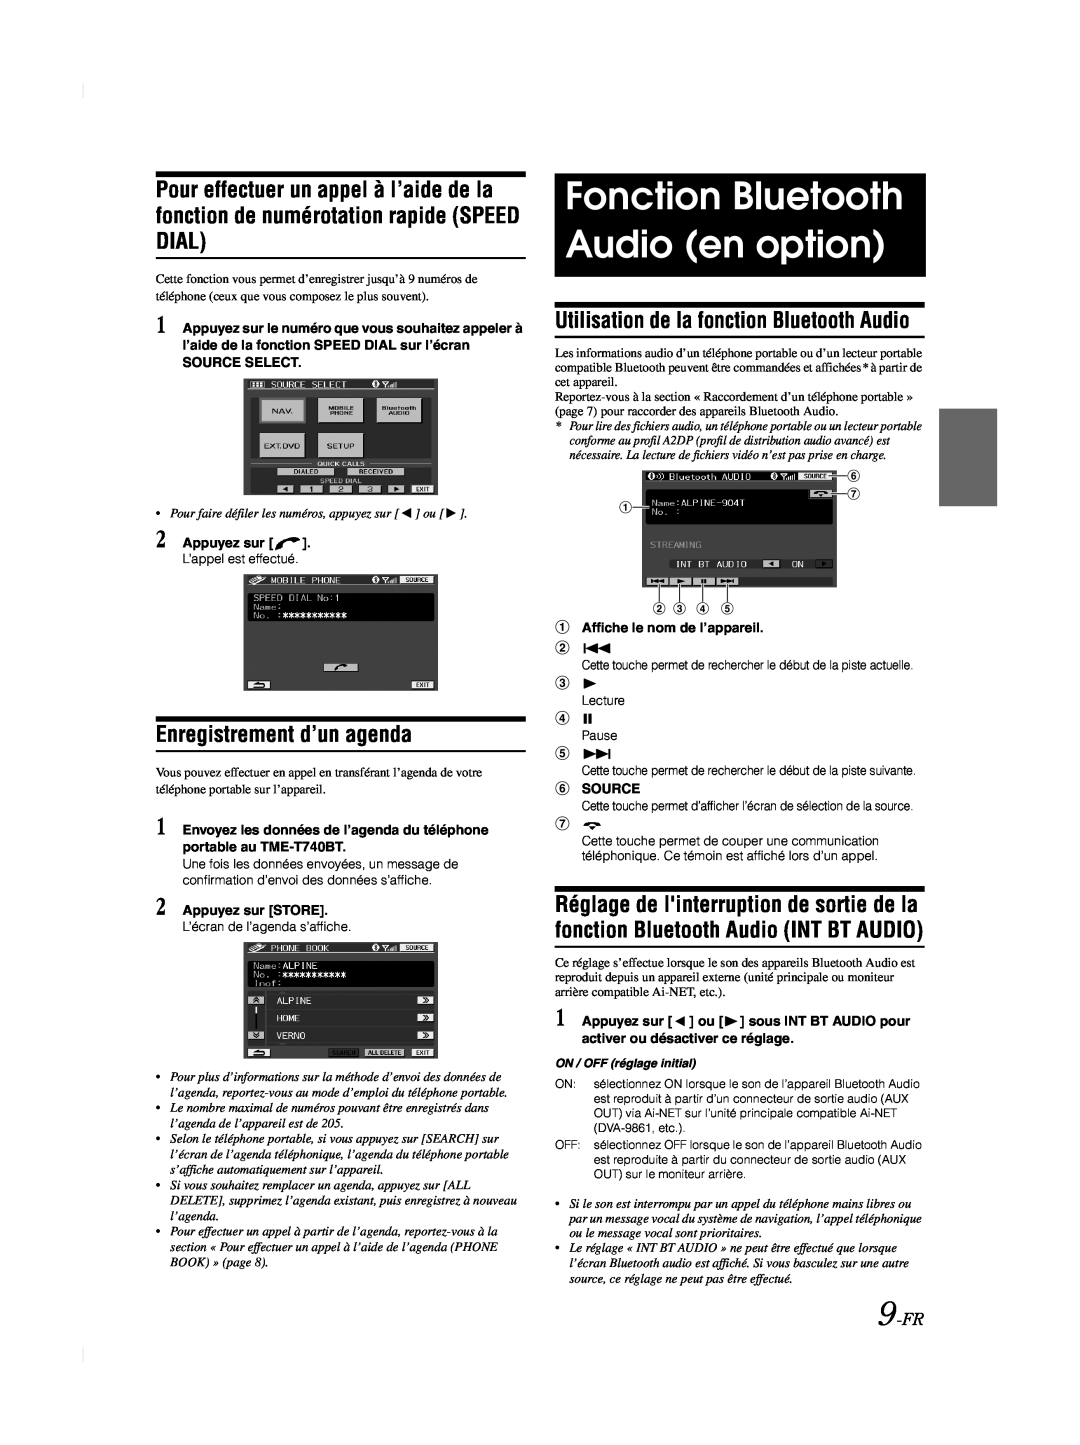 Alpine TME-M740BT Fonction Bluetooth Audio en option, Enregistrement d’un agenda, 9-FR, Source Select, Appuyez sur 